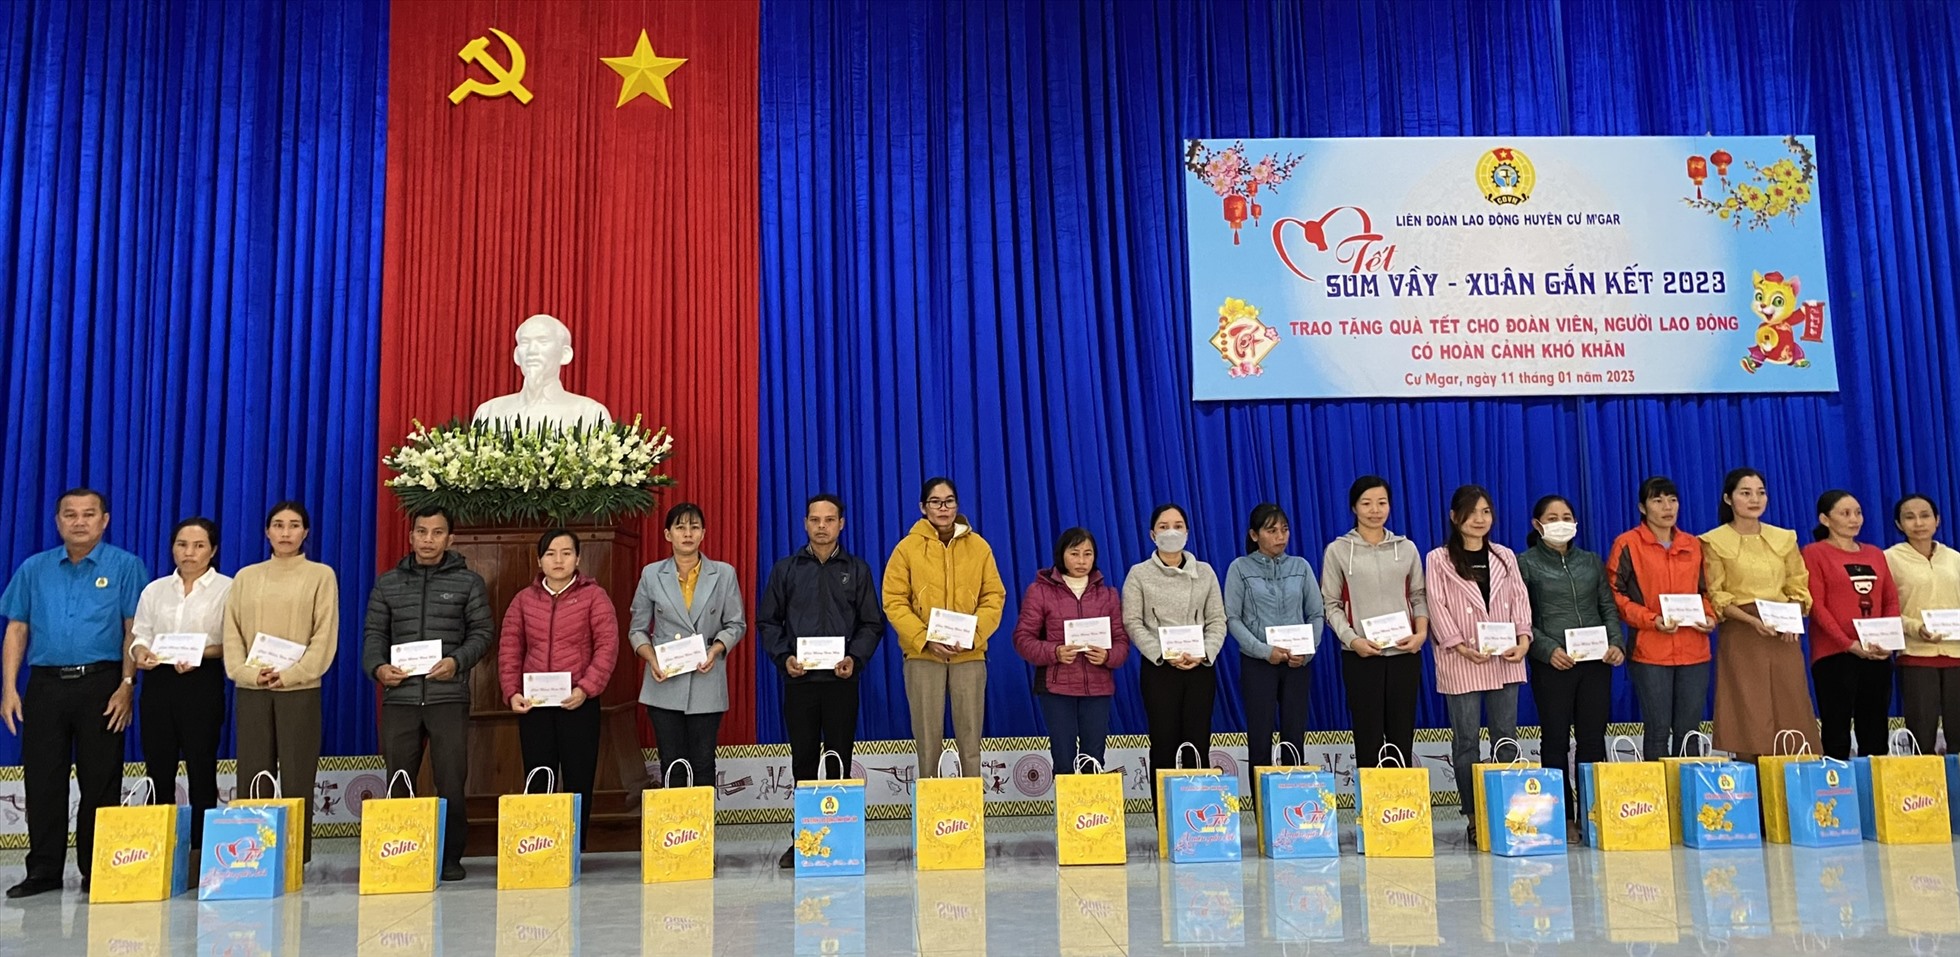 Lãnh đao Liên đoàn Lao động huyện, Ban Tuyên giáo Huyện ủy Cư M'gar trao qùa tết cho các đoàn viên. Ảnh: Trung Dũng